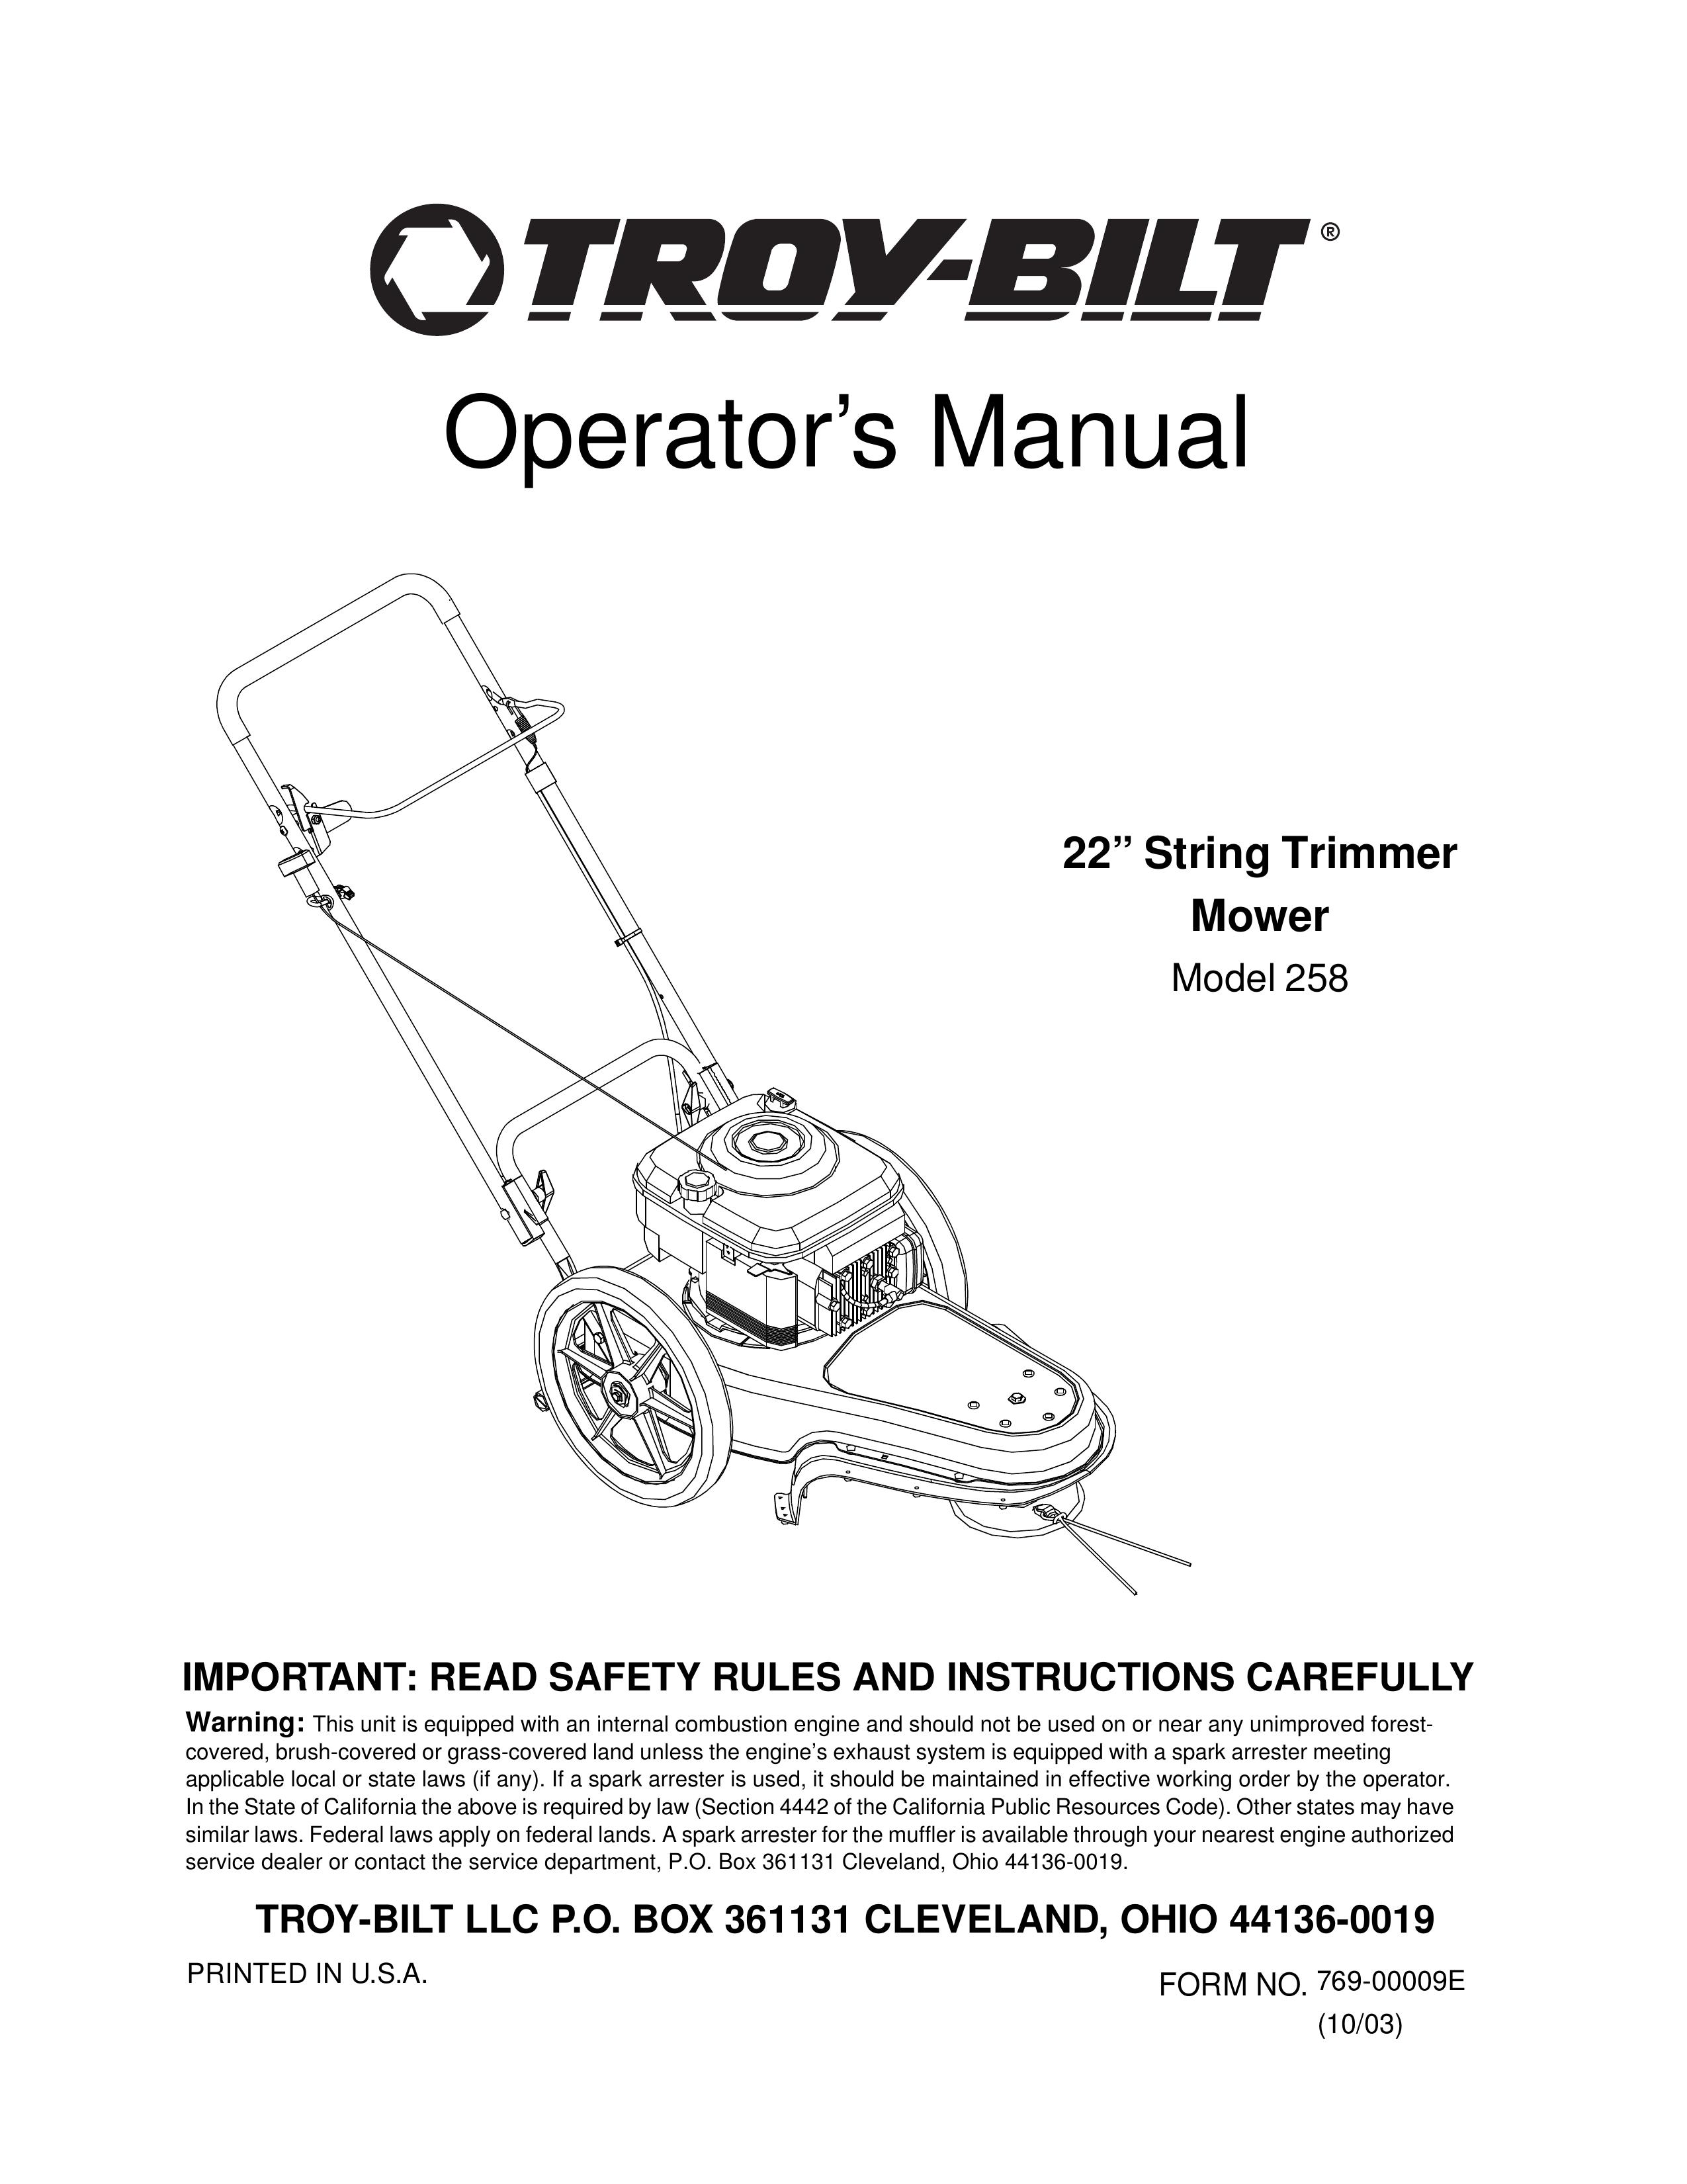 Troy-Bilt 258 Lawn Mower User Manual